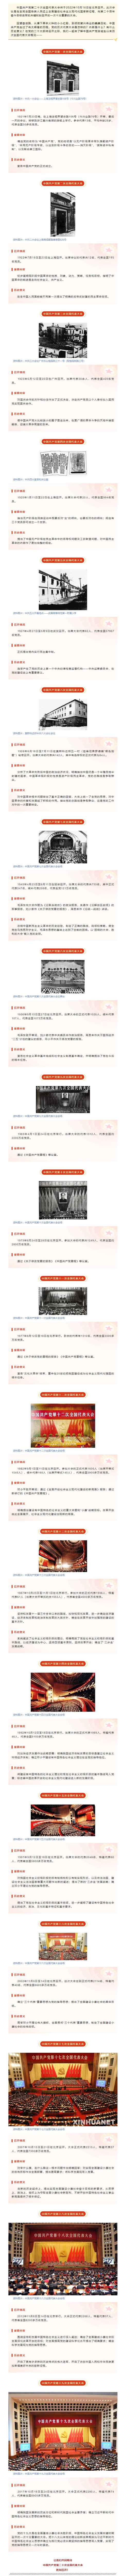 中国共产党历次全国代表大会.jpg